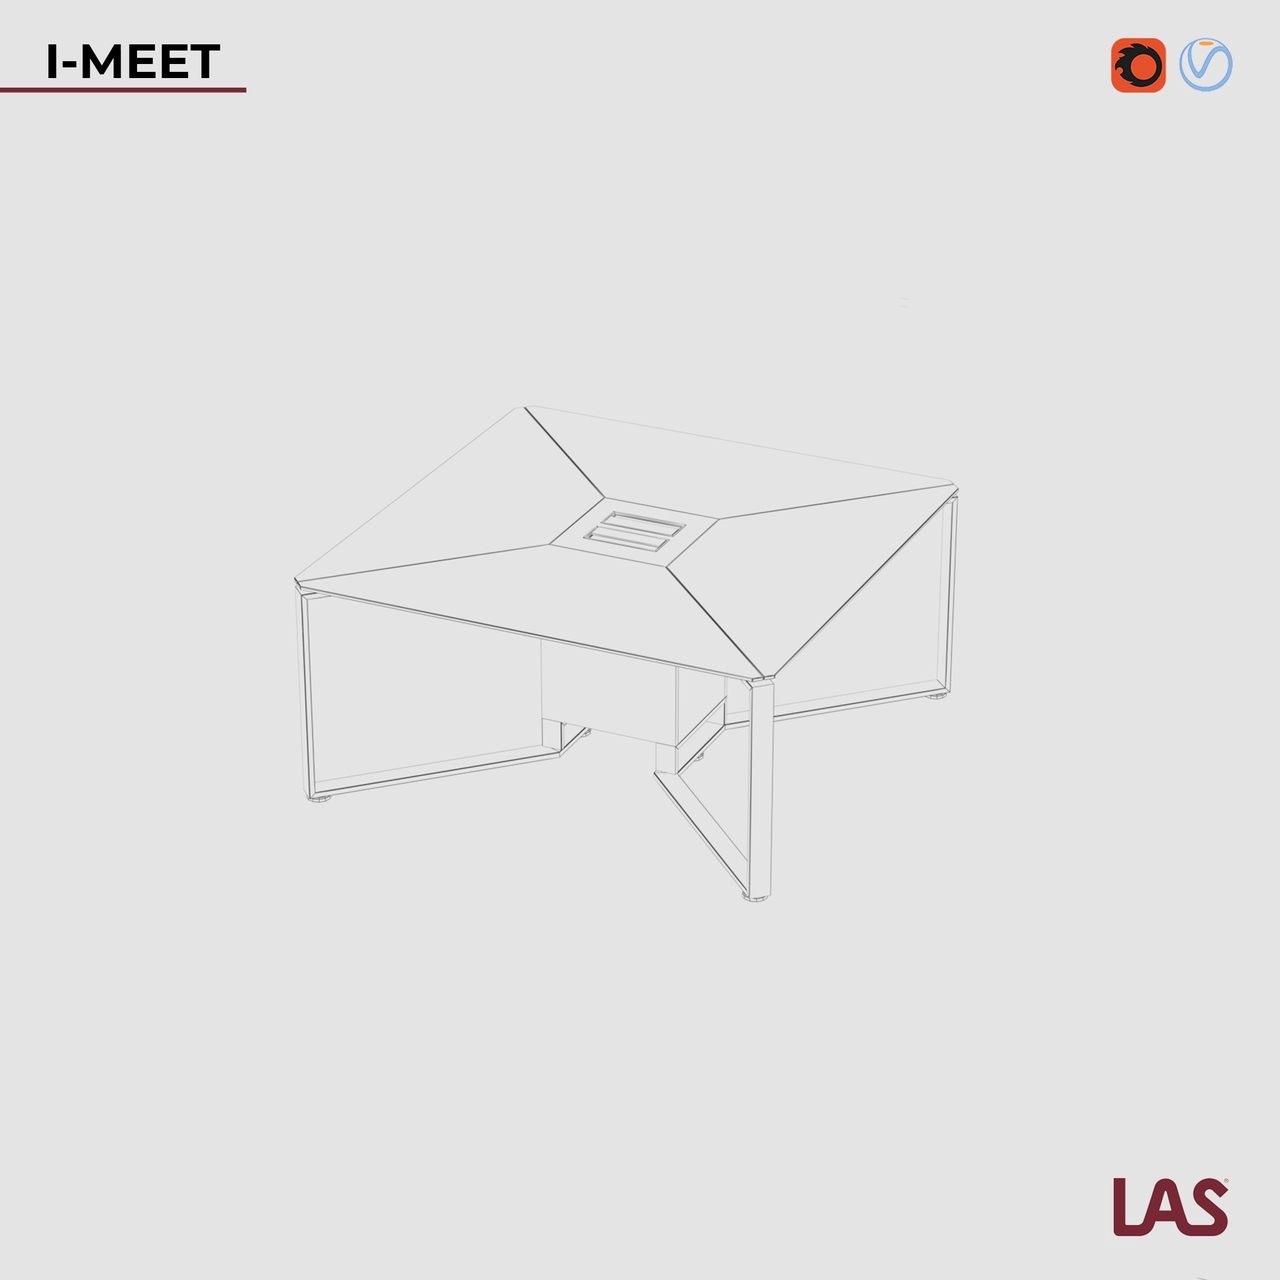 Превью G 3D-модели квадратного переговорного стола со стеклянной столешницей на 8 человек LAS I-Meet 146618